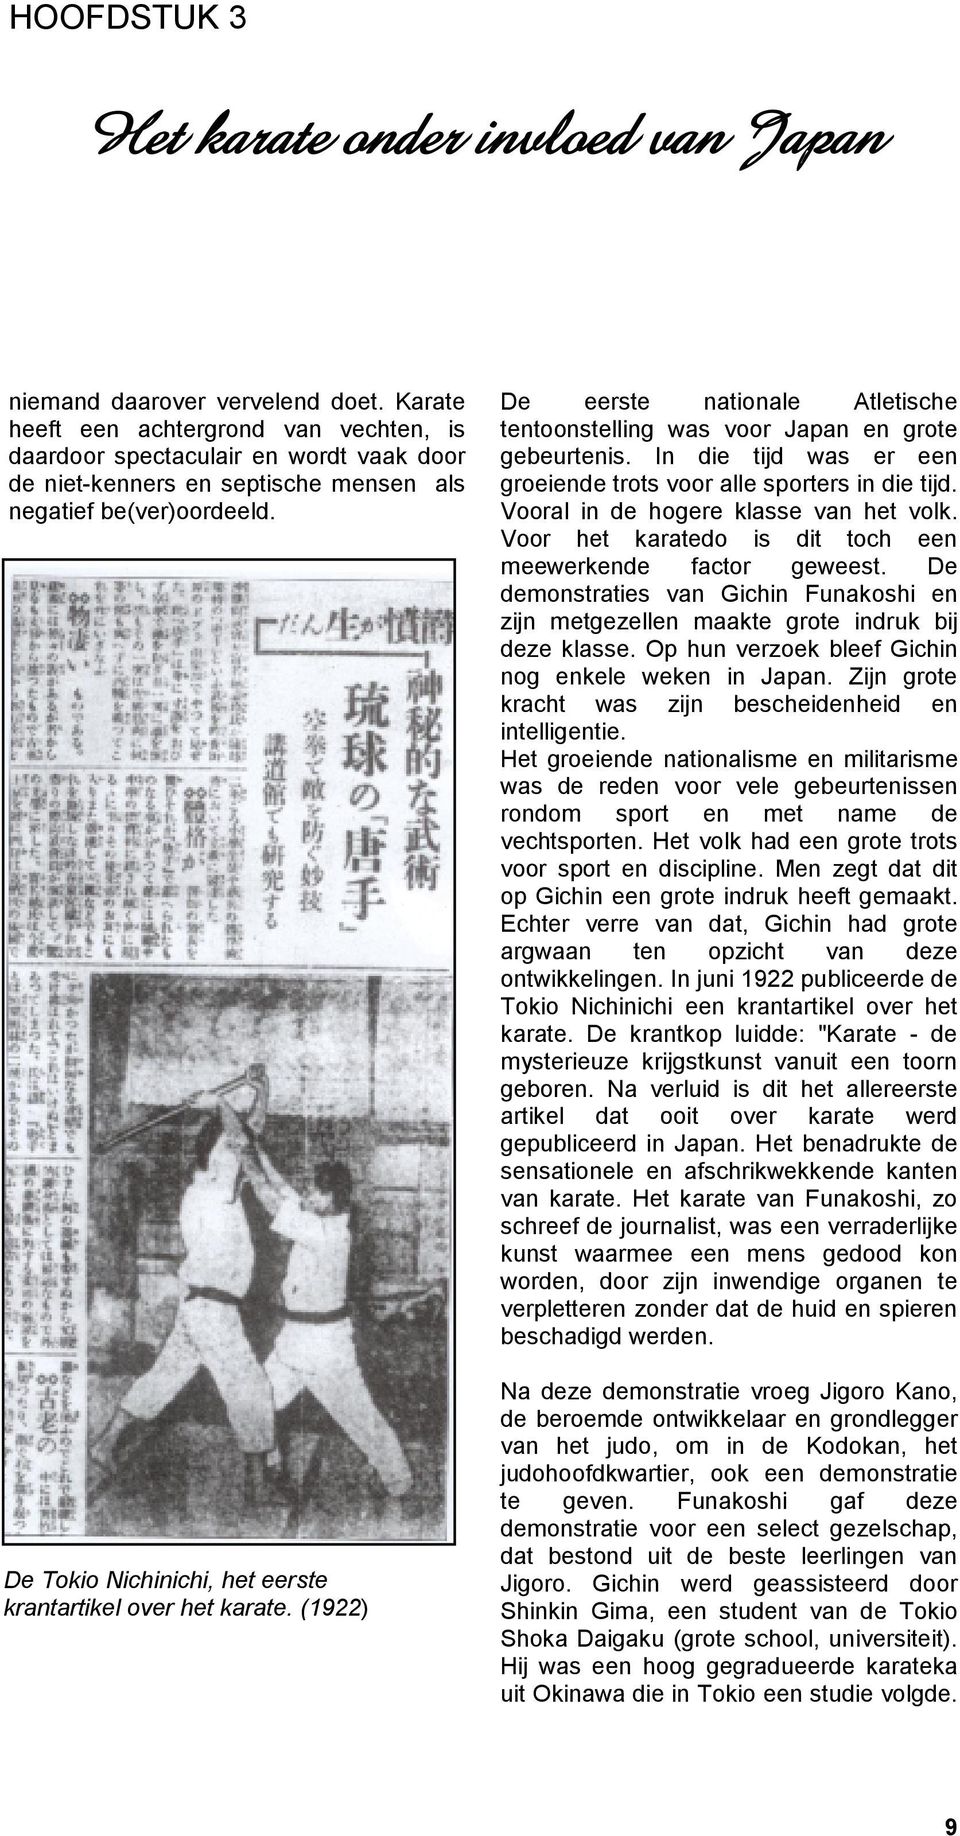 De Tokio Nichinichi, het eerste krantartikel over het karate. (1922) De eerste nationale Atletische tentoonstelling was voor Japan en grote gebeurtenis.